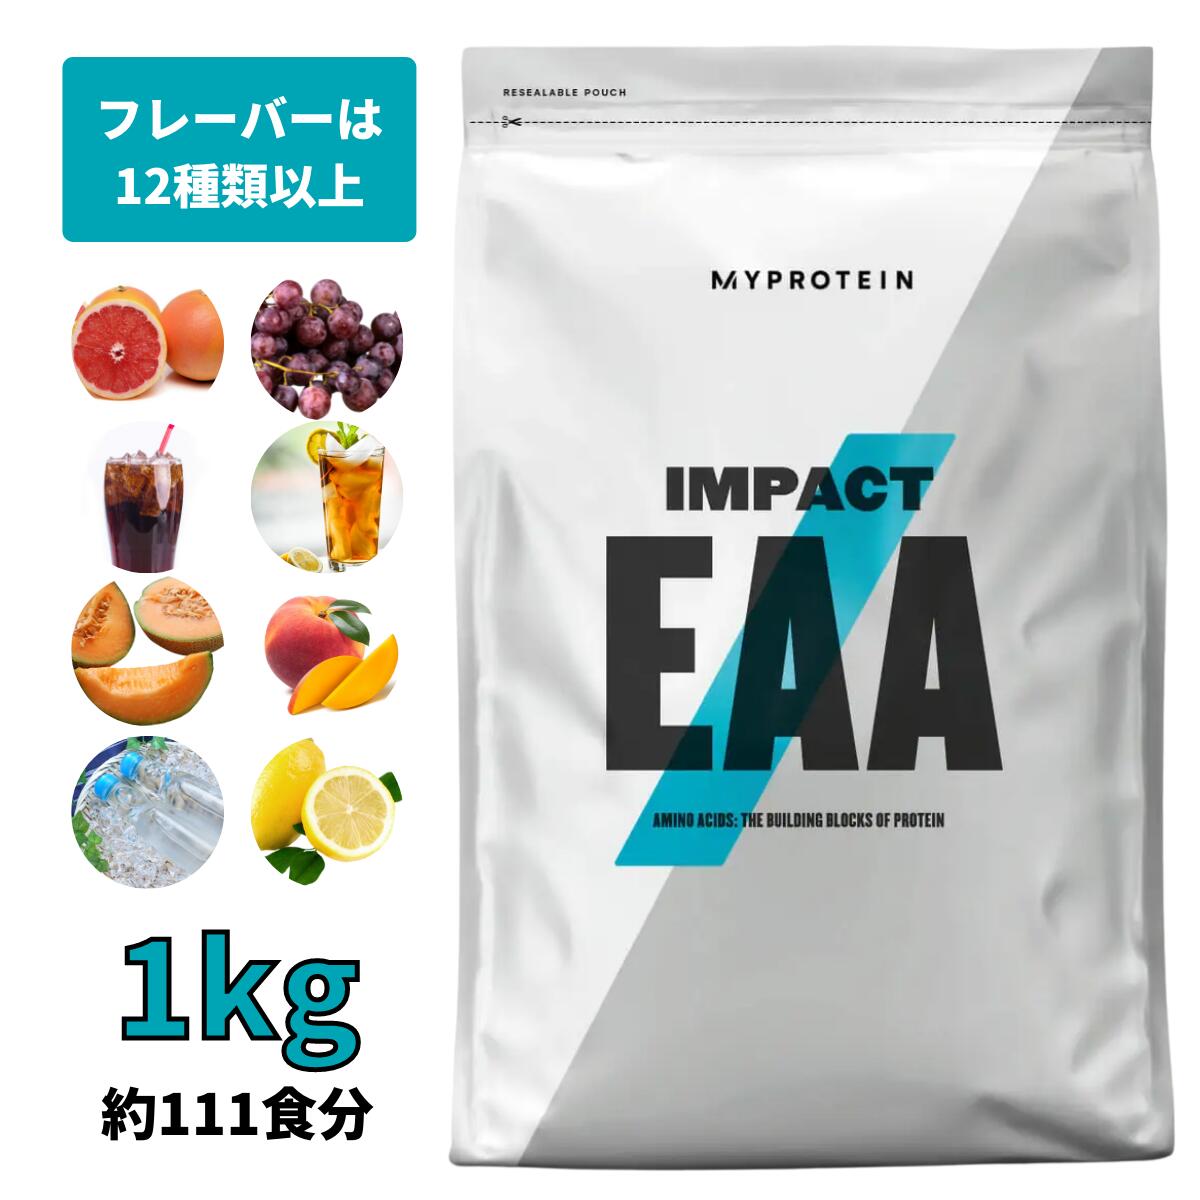 【楽天市場】マイプロテイン Impact EAA 1kg 約111食分